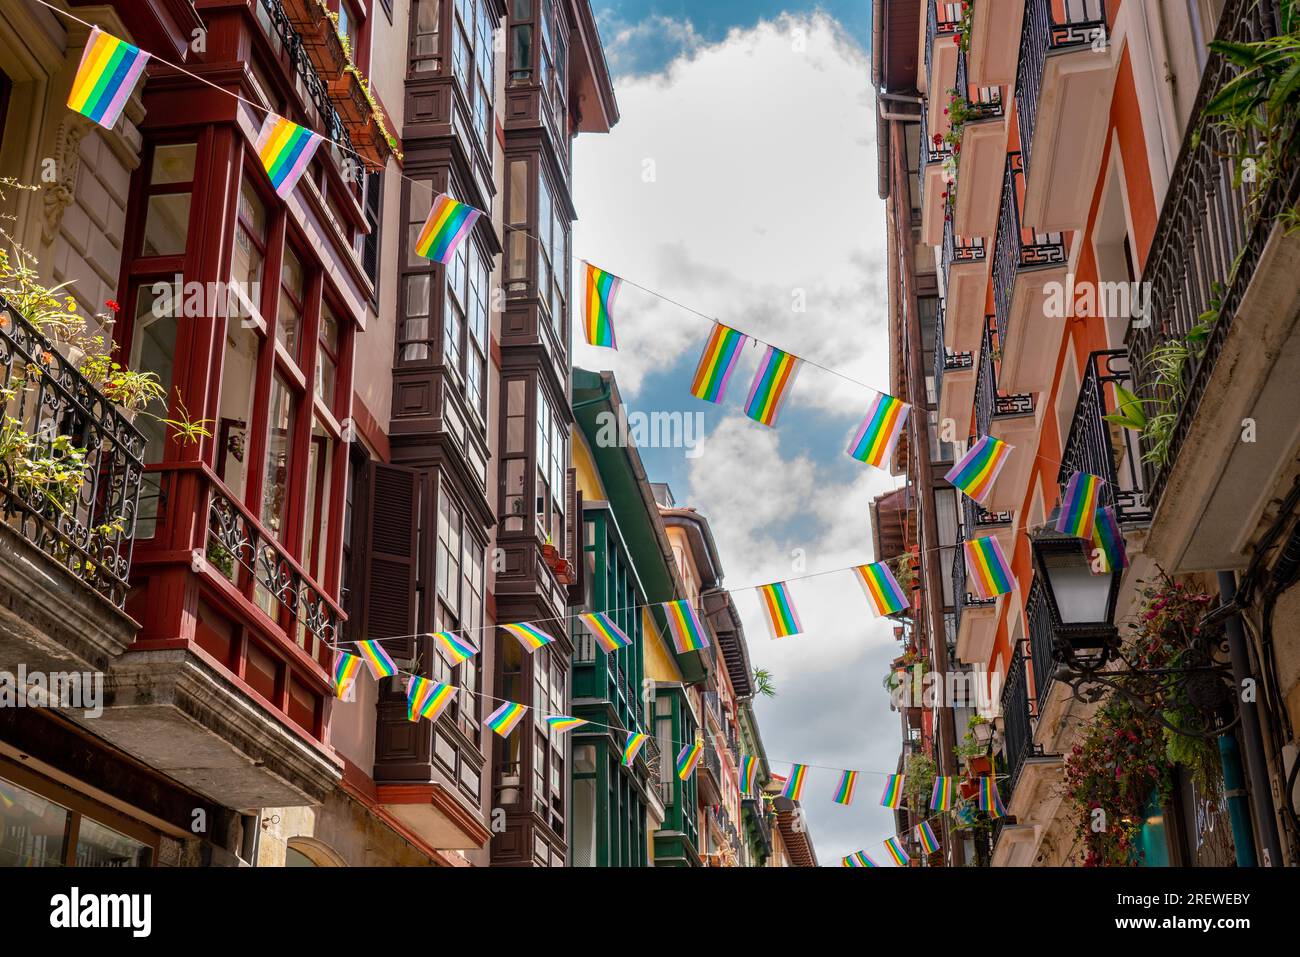 Belles rues de la ville européenne Bilbao. Destination de voyage importante dans le nord de l'Espagne. Vue sur le centre historique. Rue décorée avec drapeau LGBT. Banque D'Images